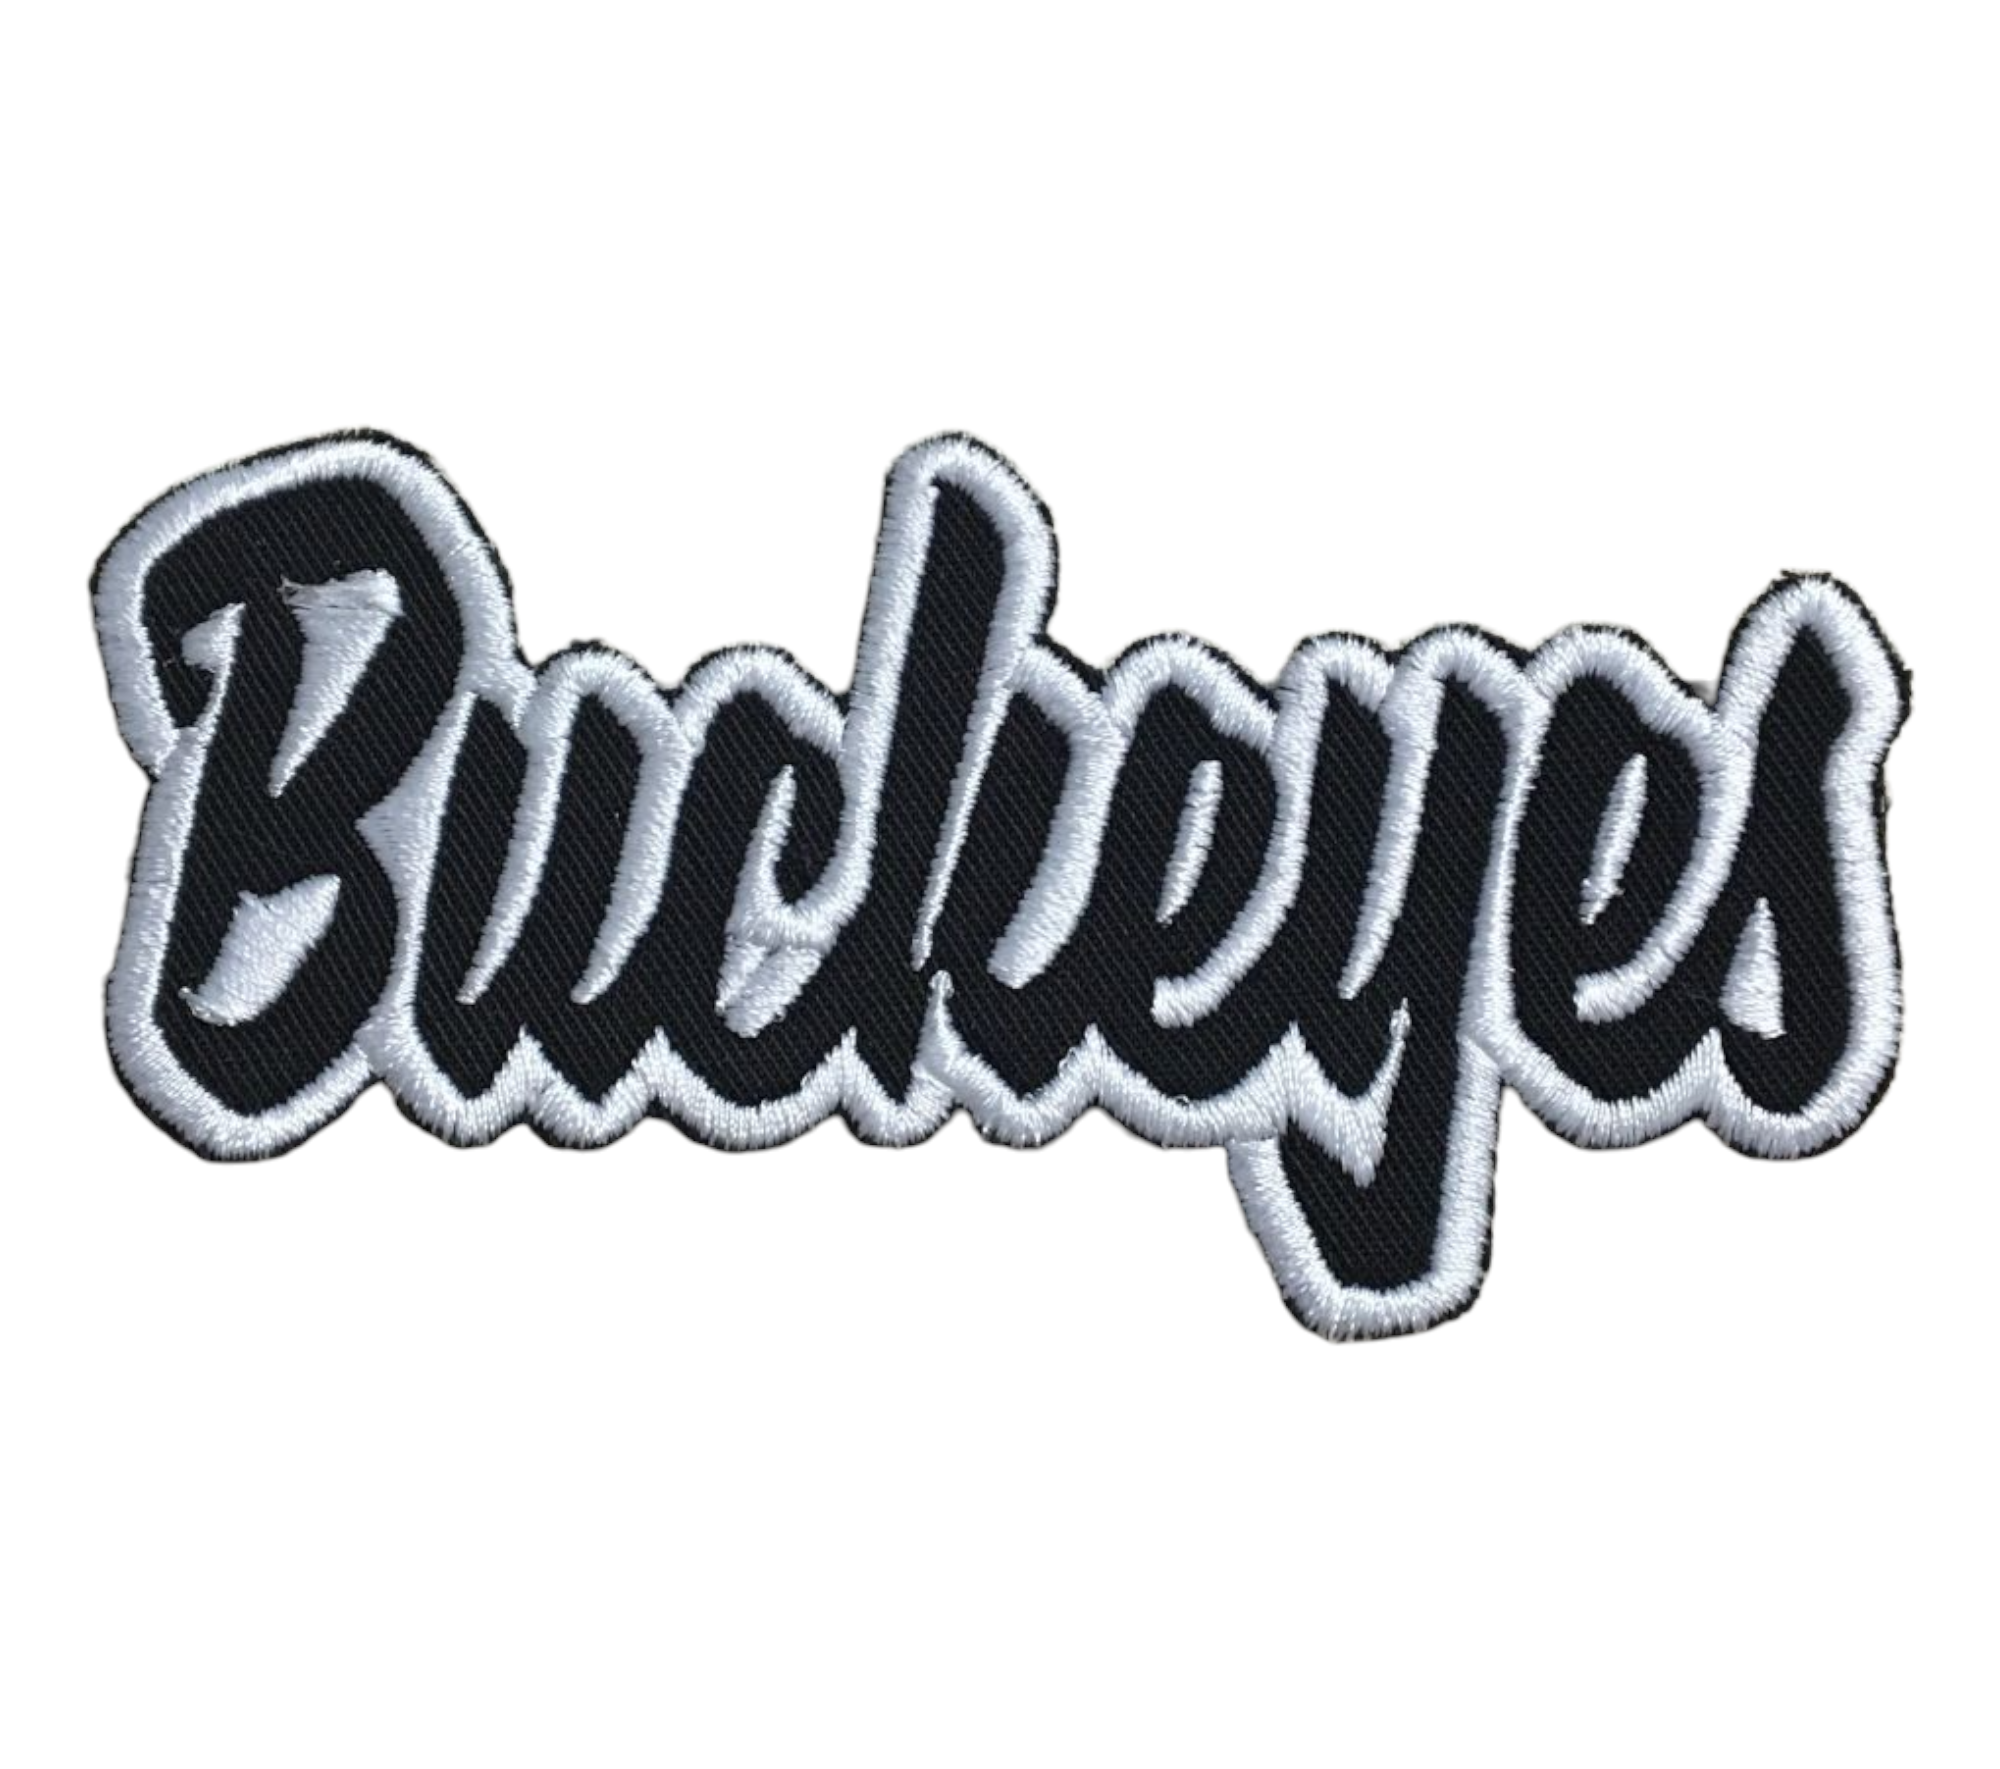 Buckeyes - 2x4 - Black/White